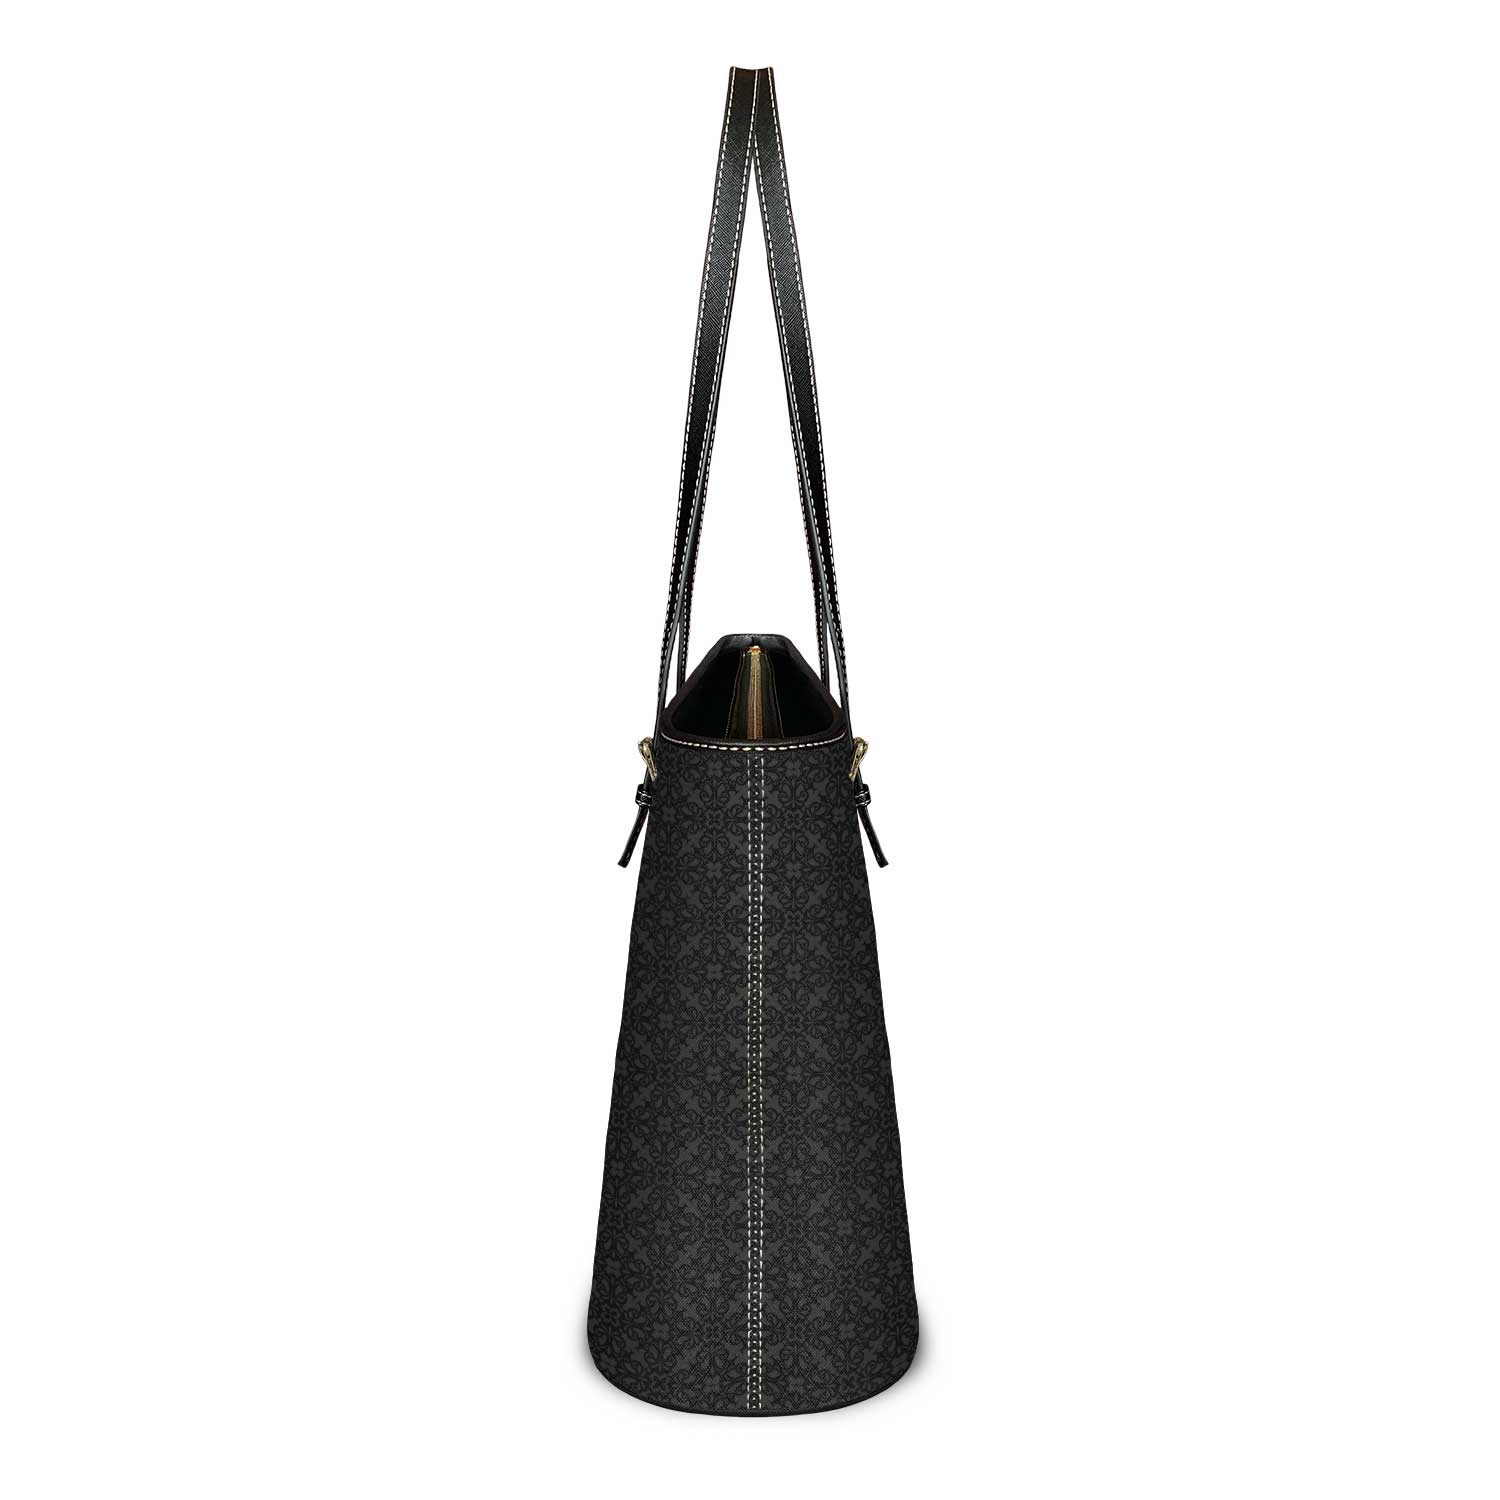 Divinity Tote Bag (Black) - VENXARA®